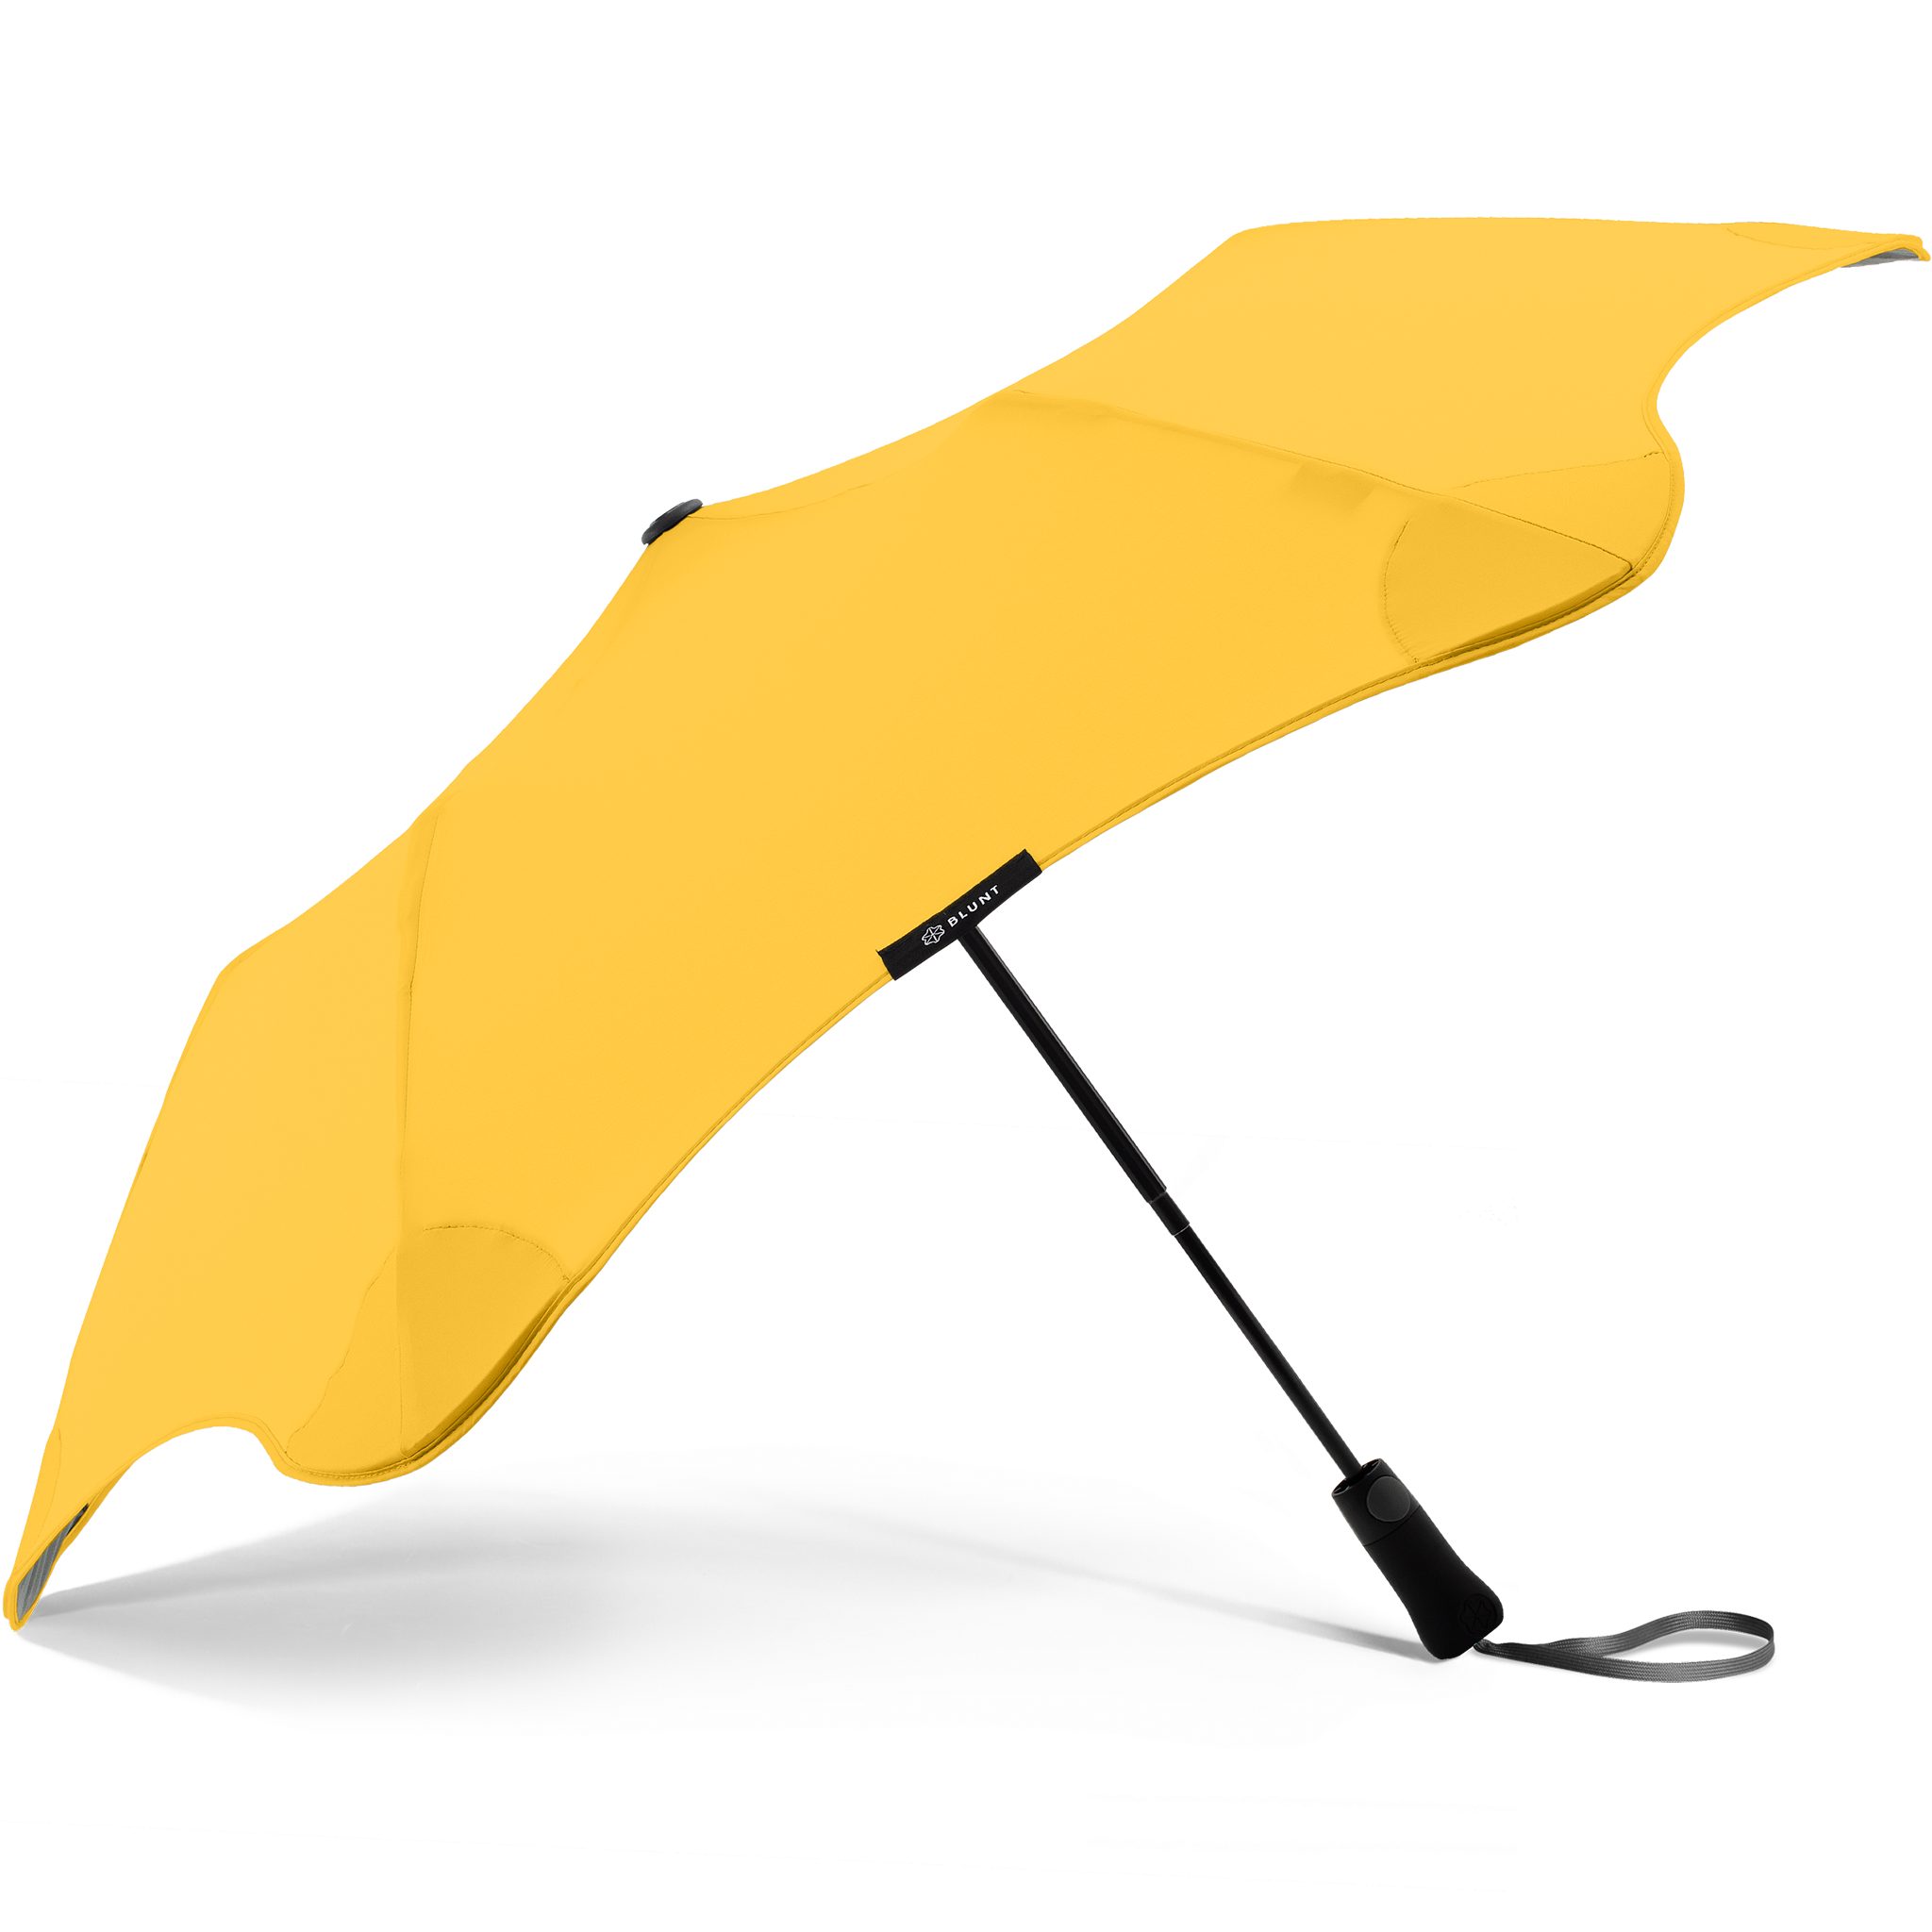 Blunt Taschenregenschirm Metro, patentierte herausragende Silhouette Technologie, gelb einzigartige